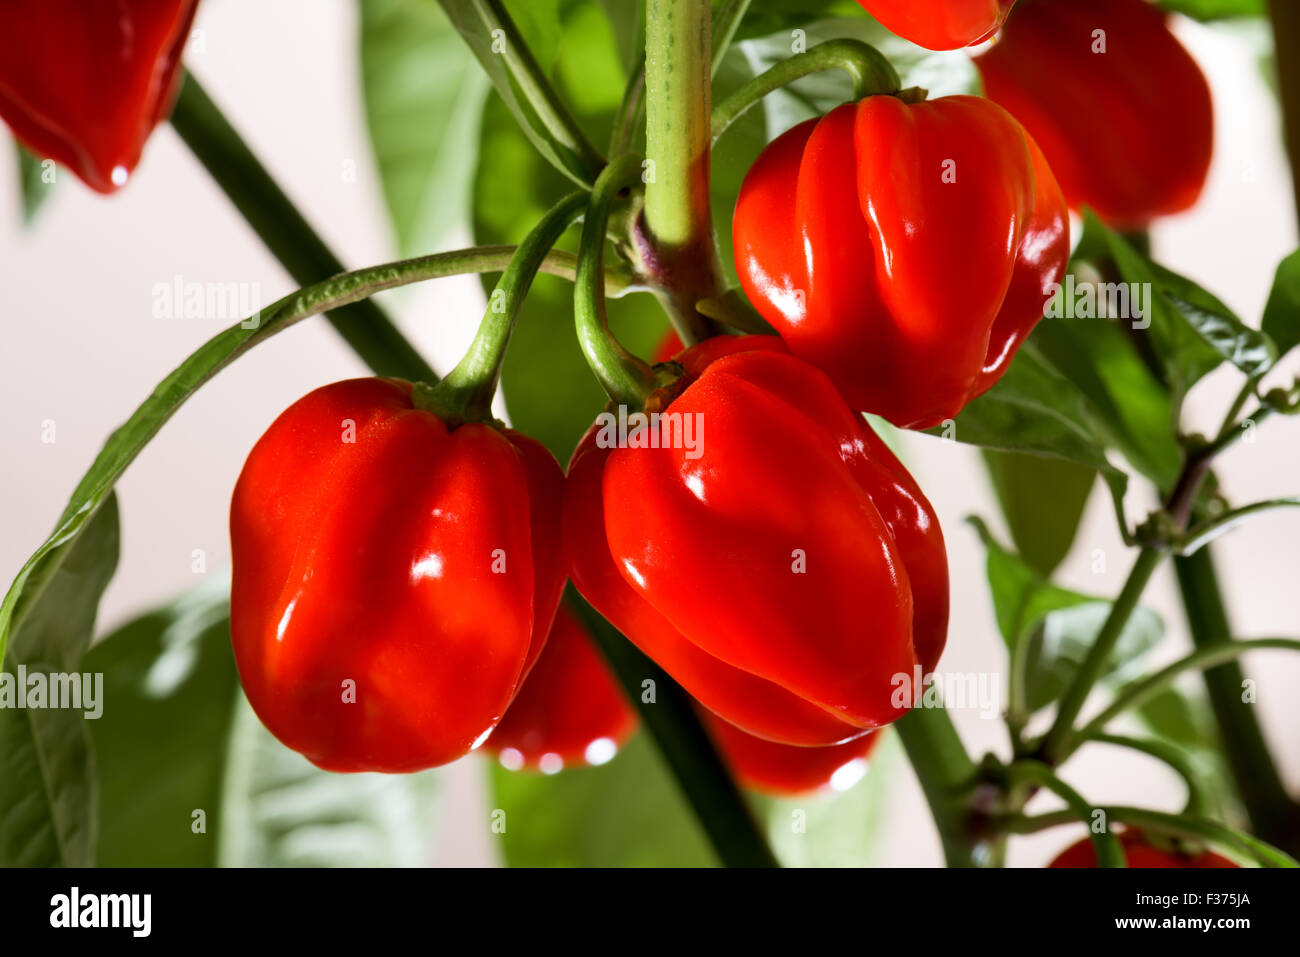 Molto rosso peperoncino habanero hot chili pepper sulla bussola verde rosso raccolto fresco autunno brillantezza alimentare cuoco spezie bianco piccante Foto Stock